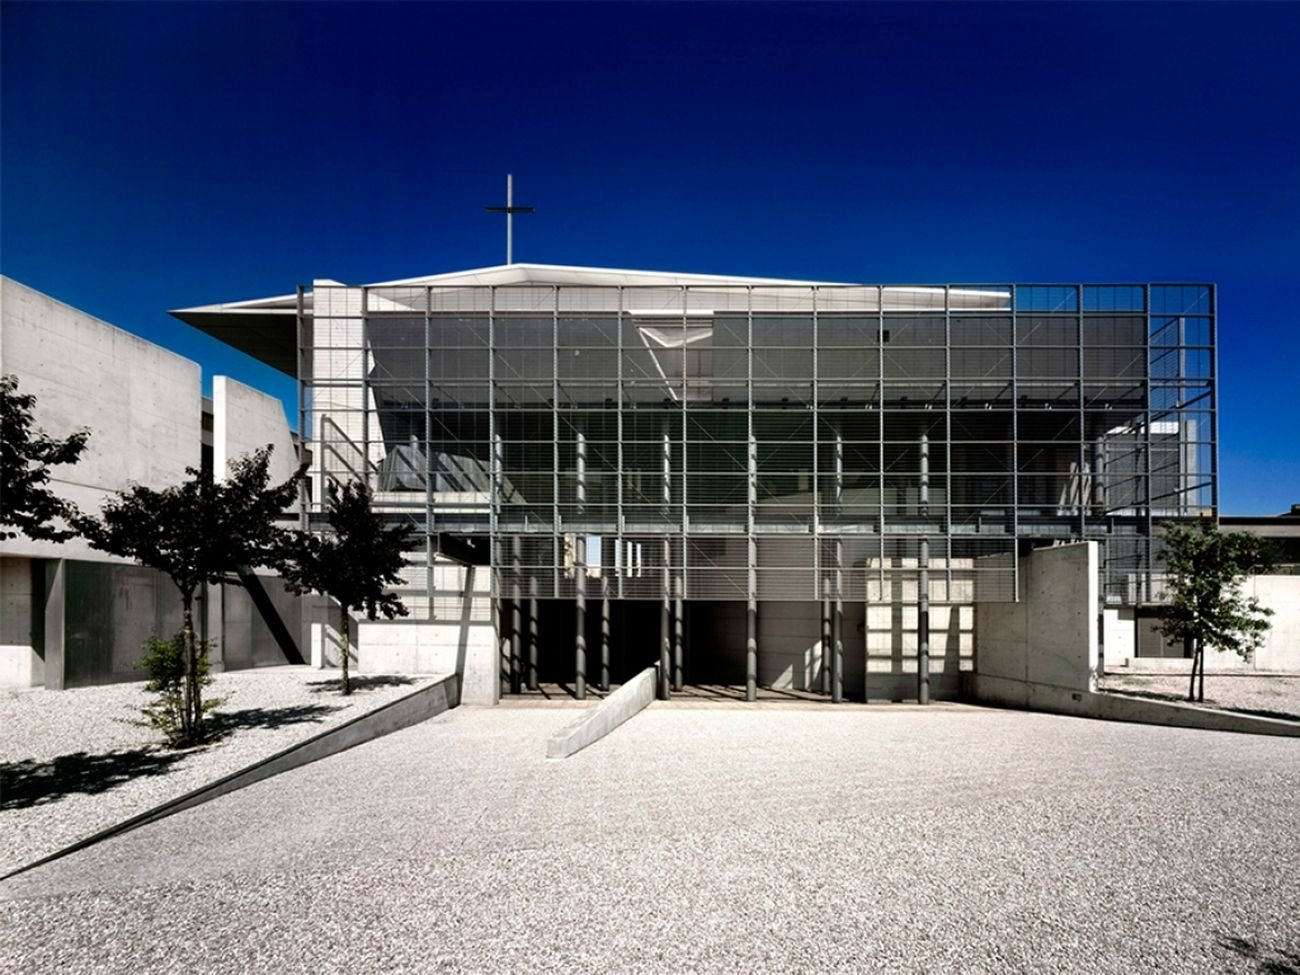 Nemesi, Chiesa di Santa Maria della Presentazione, Roma, 1997-2002. Photo (c) Andrea Jemolo